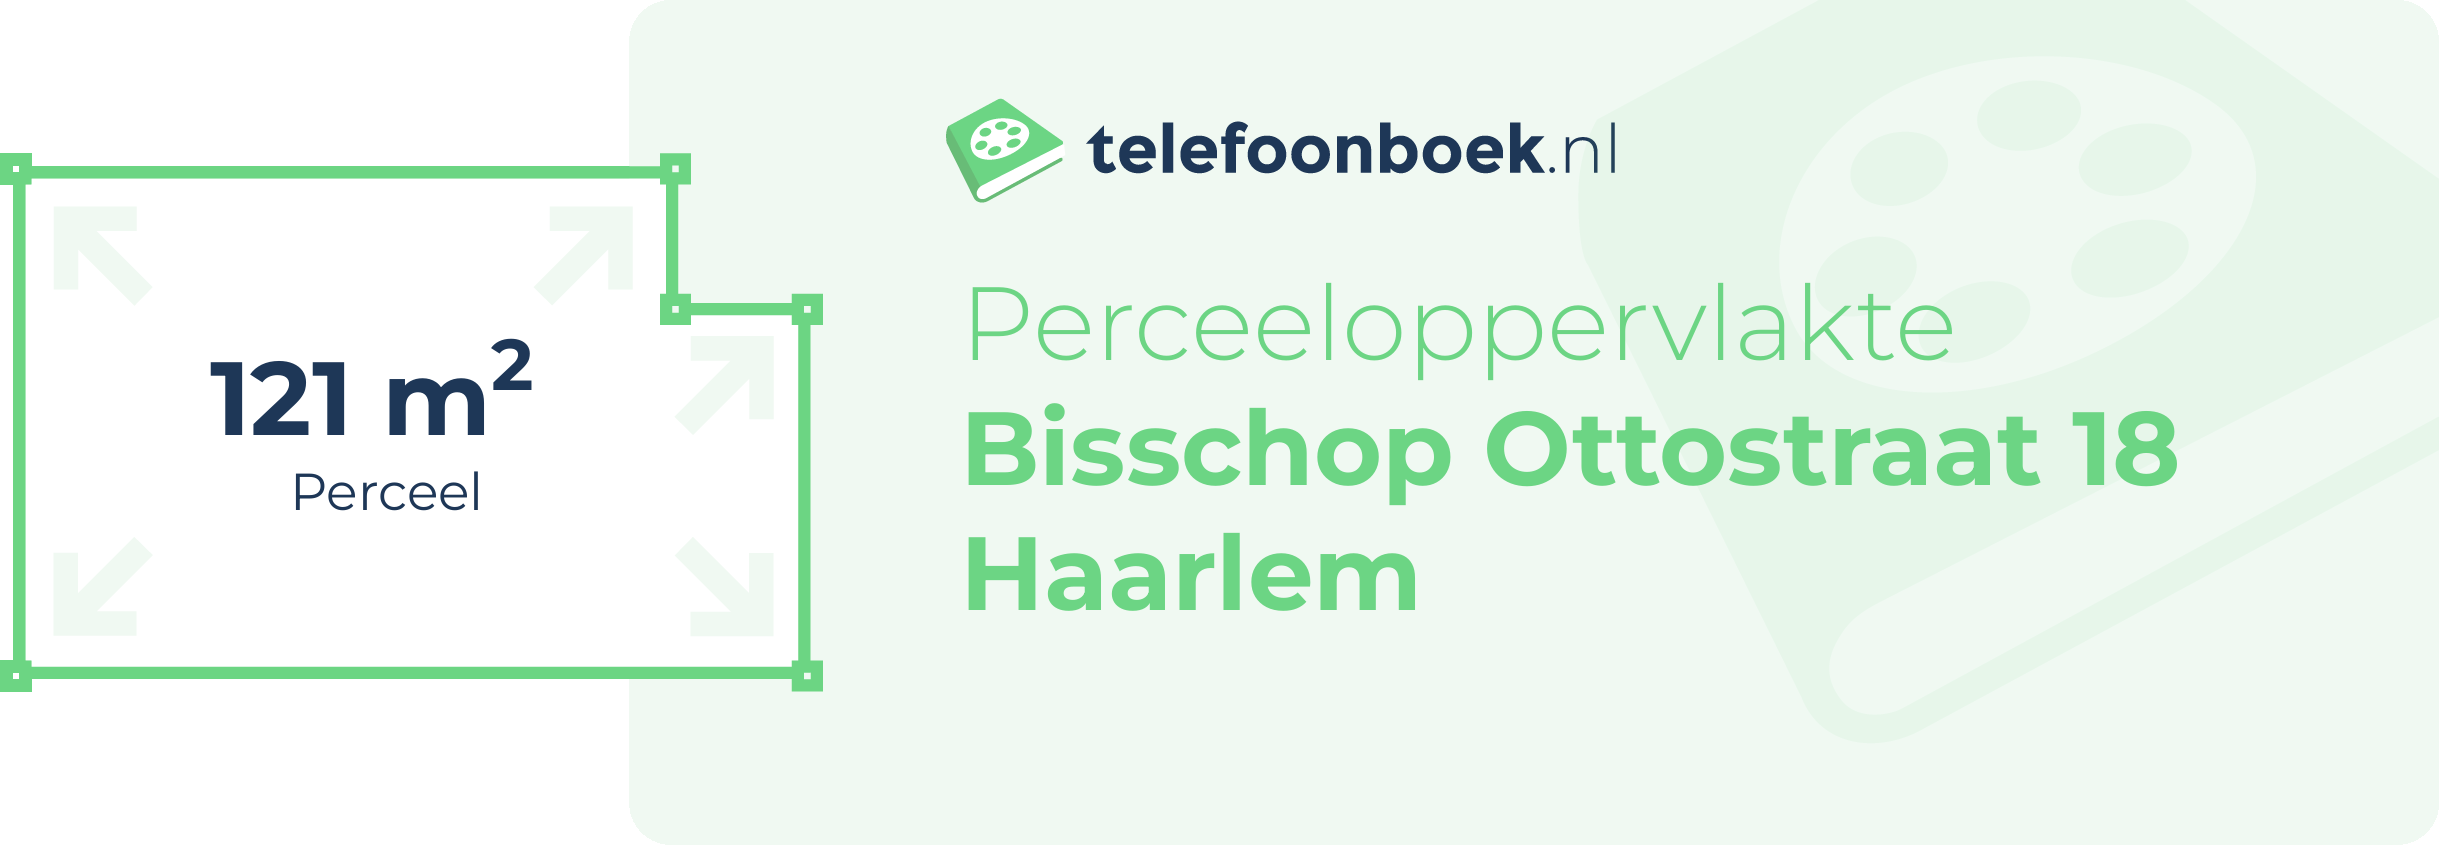 Perceeloppervlakte Bisschop Ottostraat 18 Haarlem